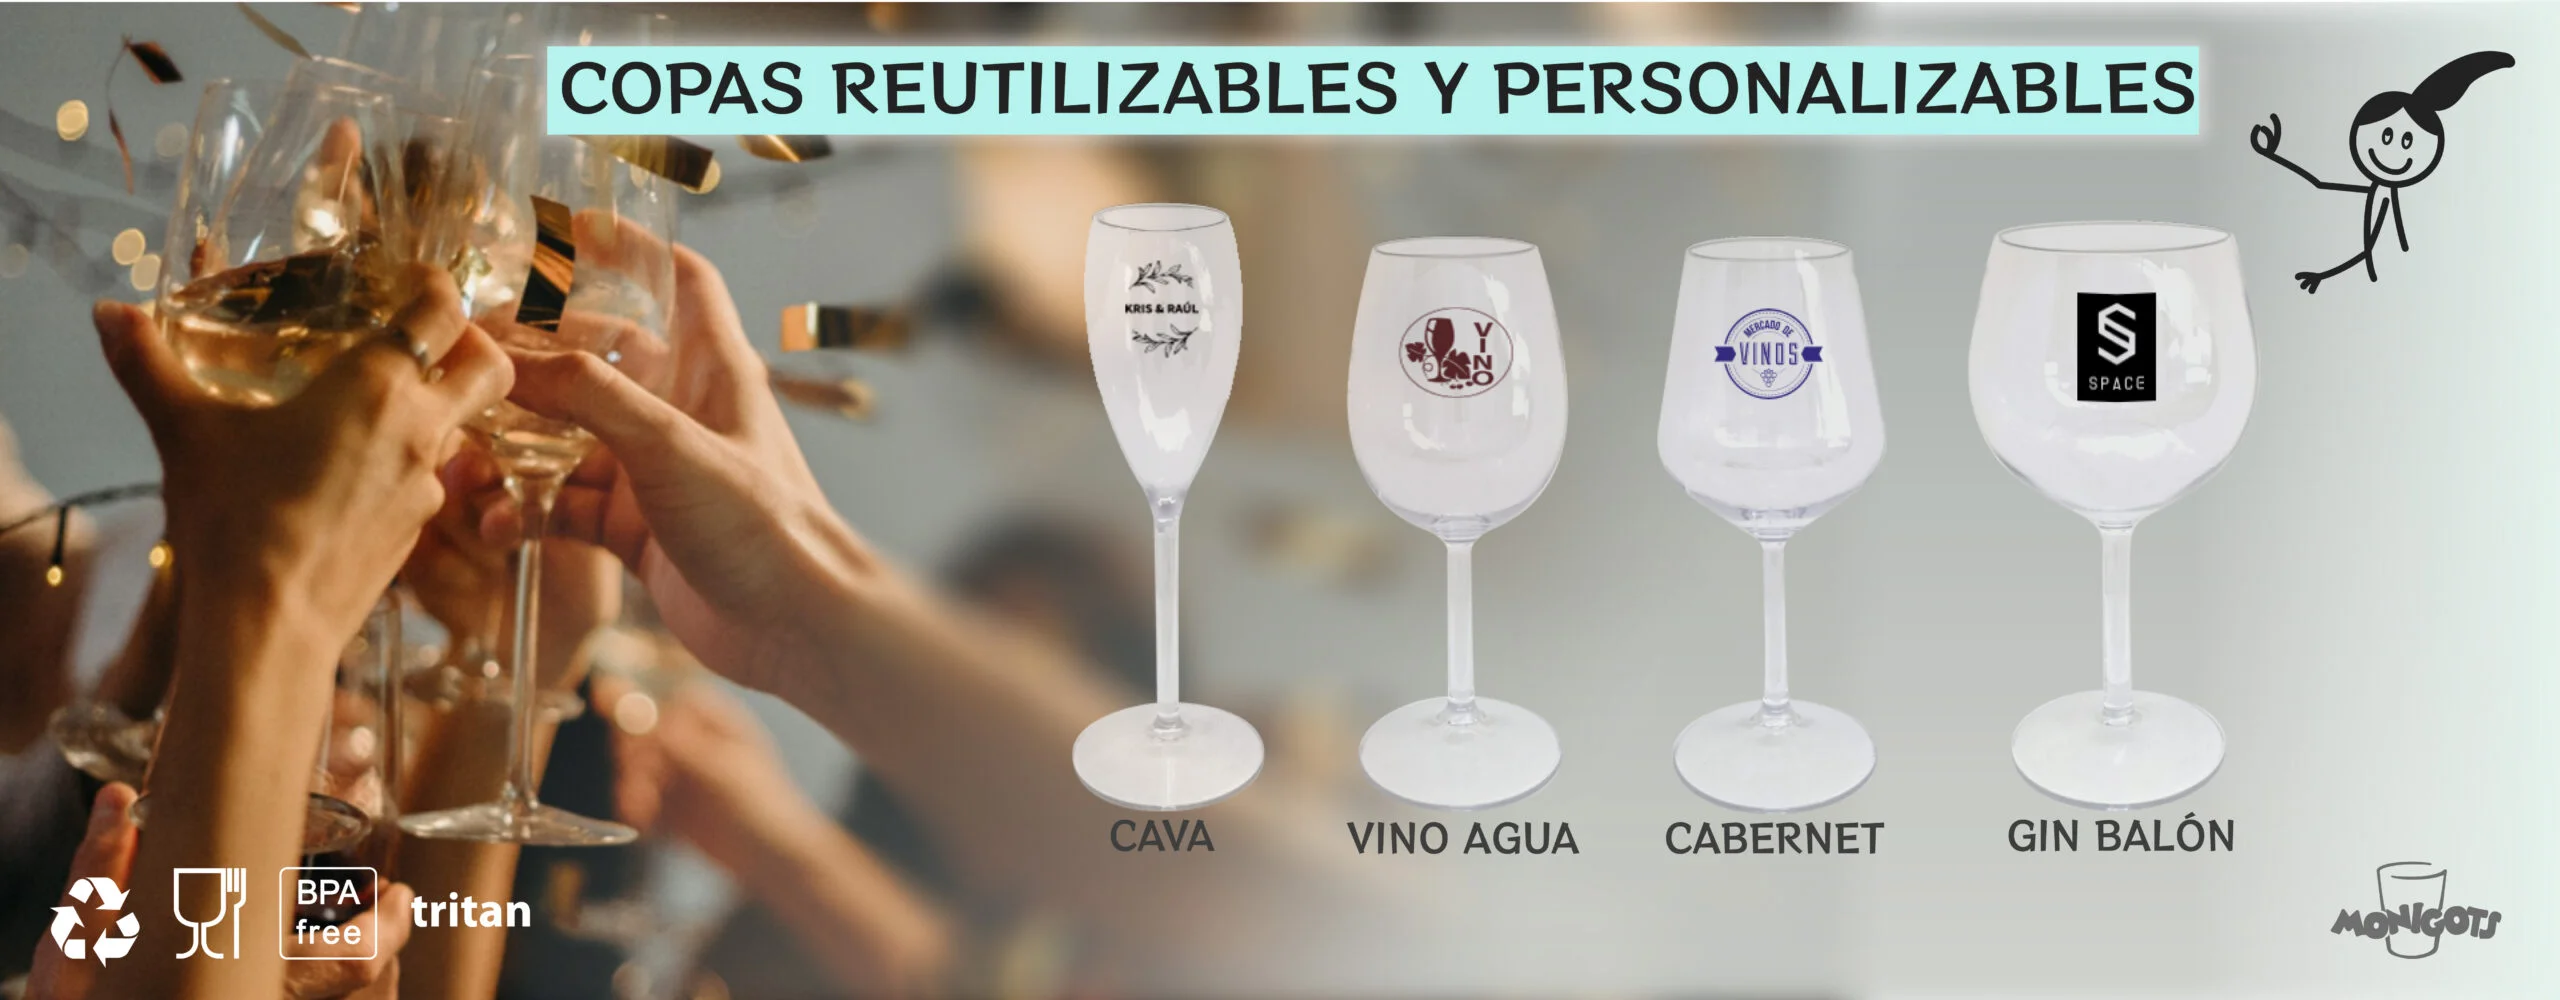 copas para eventos, material Tritan, personalizables, somos fabricantes de copas personalizables ecológicas.